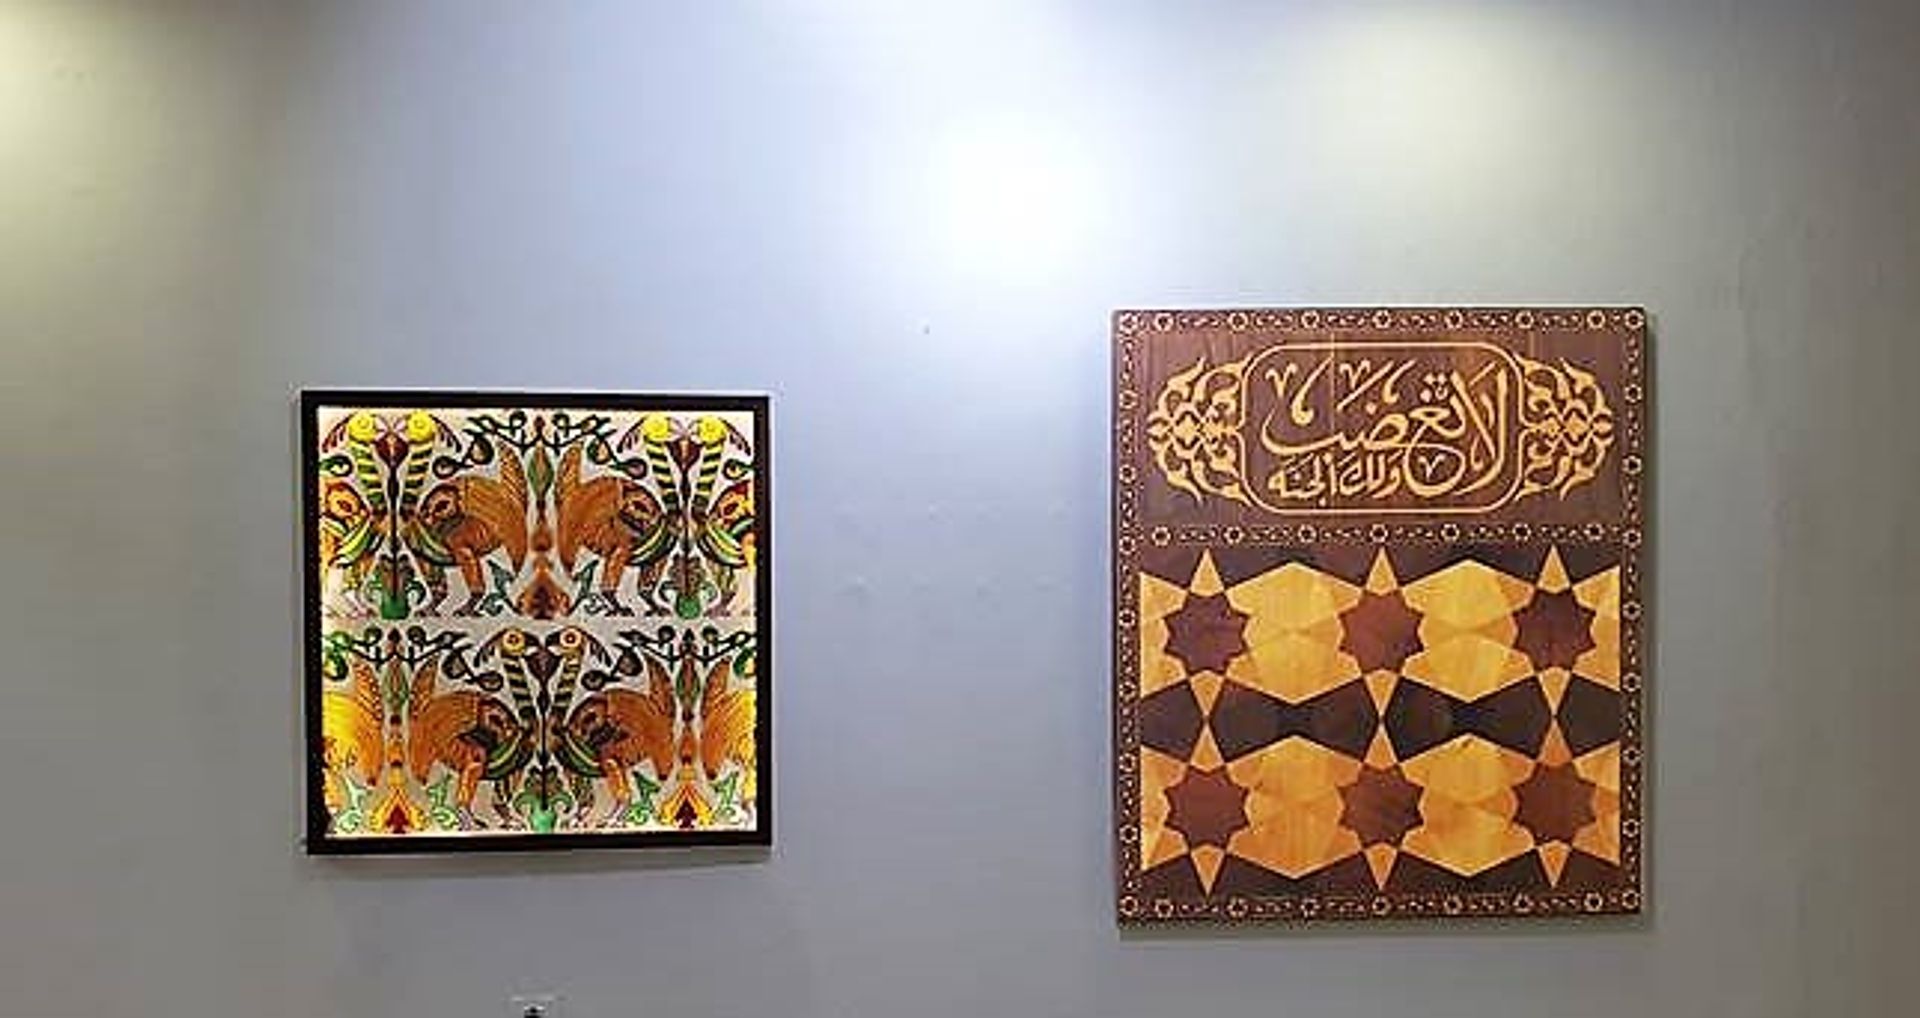 התערוכה מבקשת לבחון את מוטיב הקליגרפיה והערבּסקה, הלקוח מהתרבות המוסלמית תוך יציקת תכנים עכשוויים וביוגרפיים

קרדיט: אביטל בר-שי